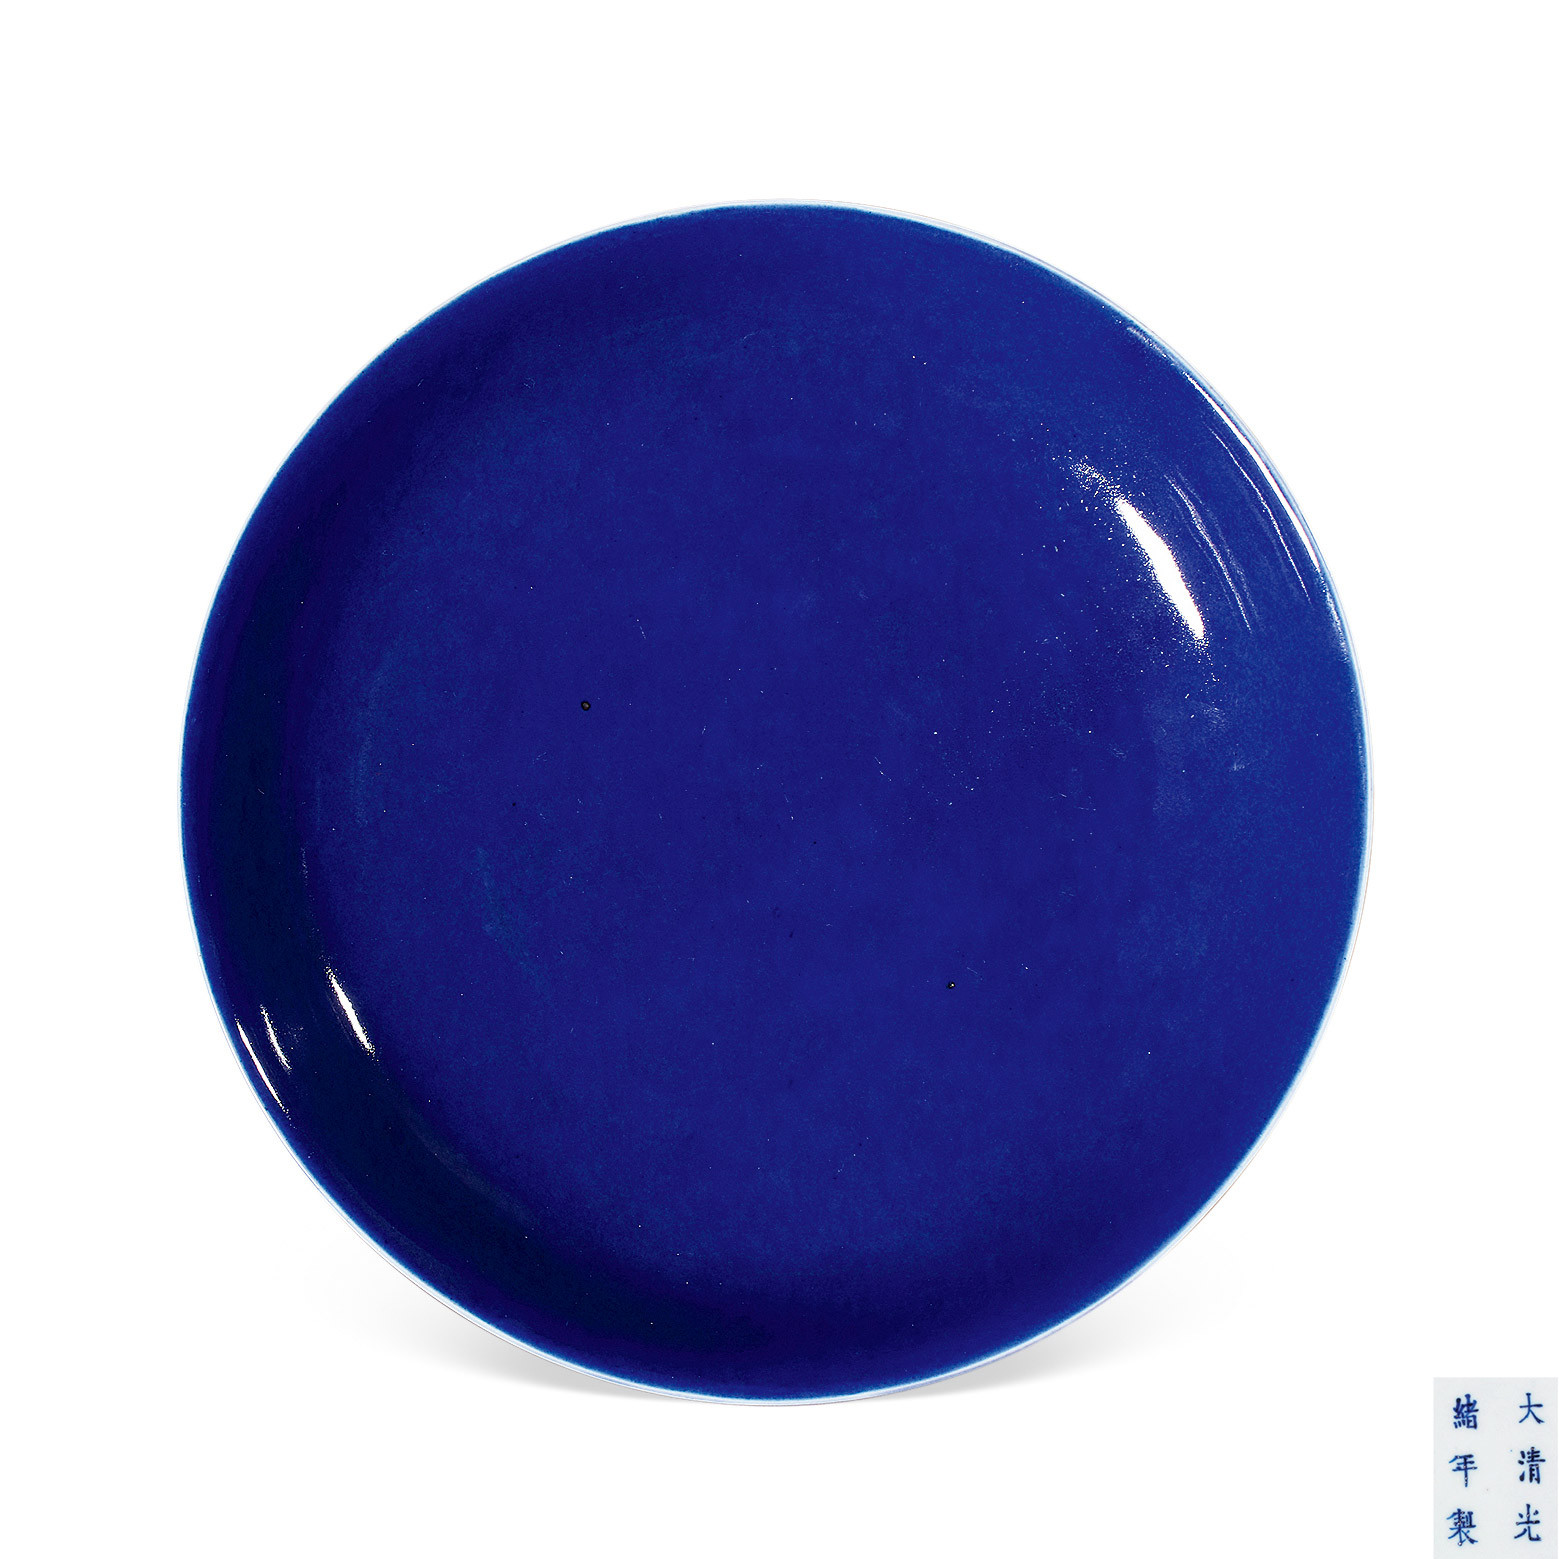 A BLUE-GLAZED PLATE